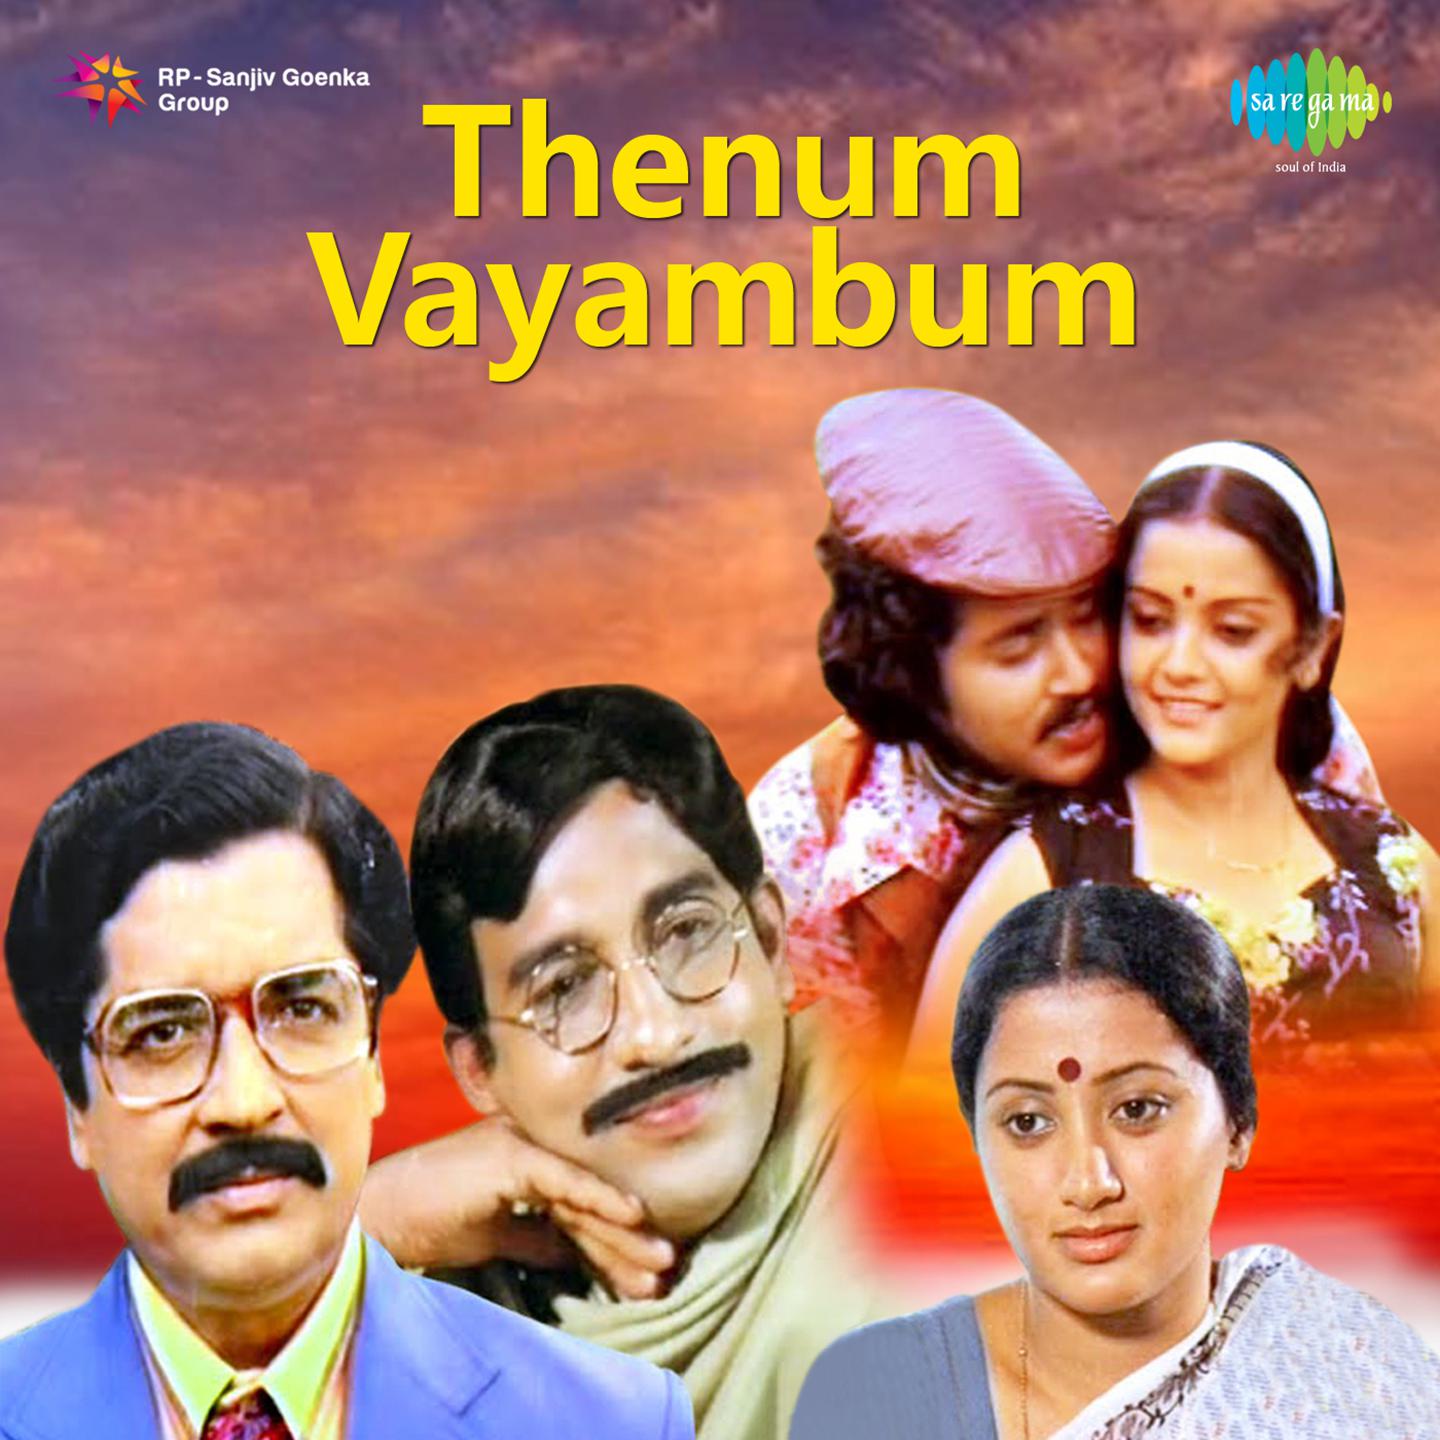 Thenum Vayambum